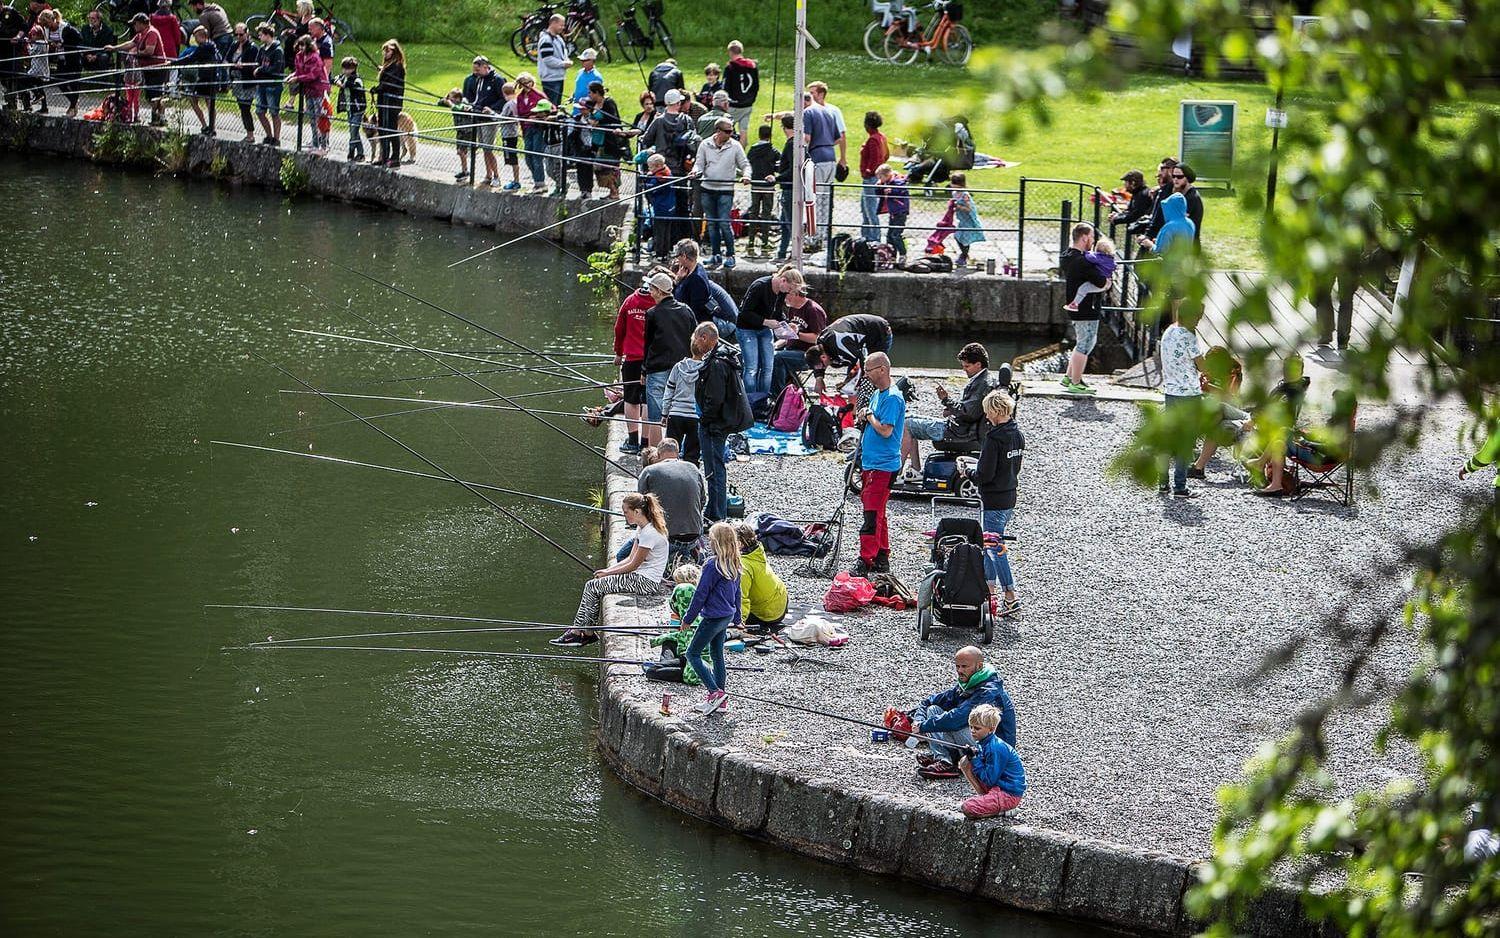 Visst nappar det. På söndag blir det fisketävling för barn i Gamle Dal'n. Bild: Andreas Olsson